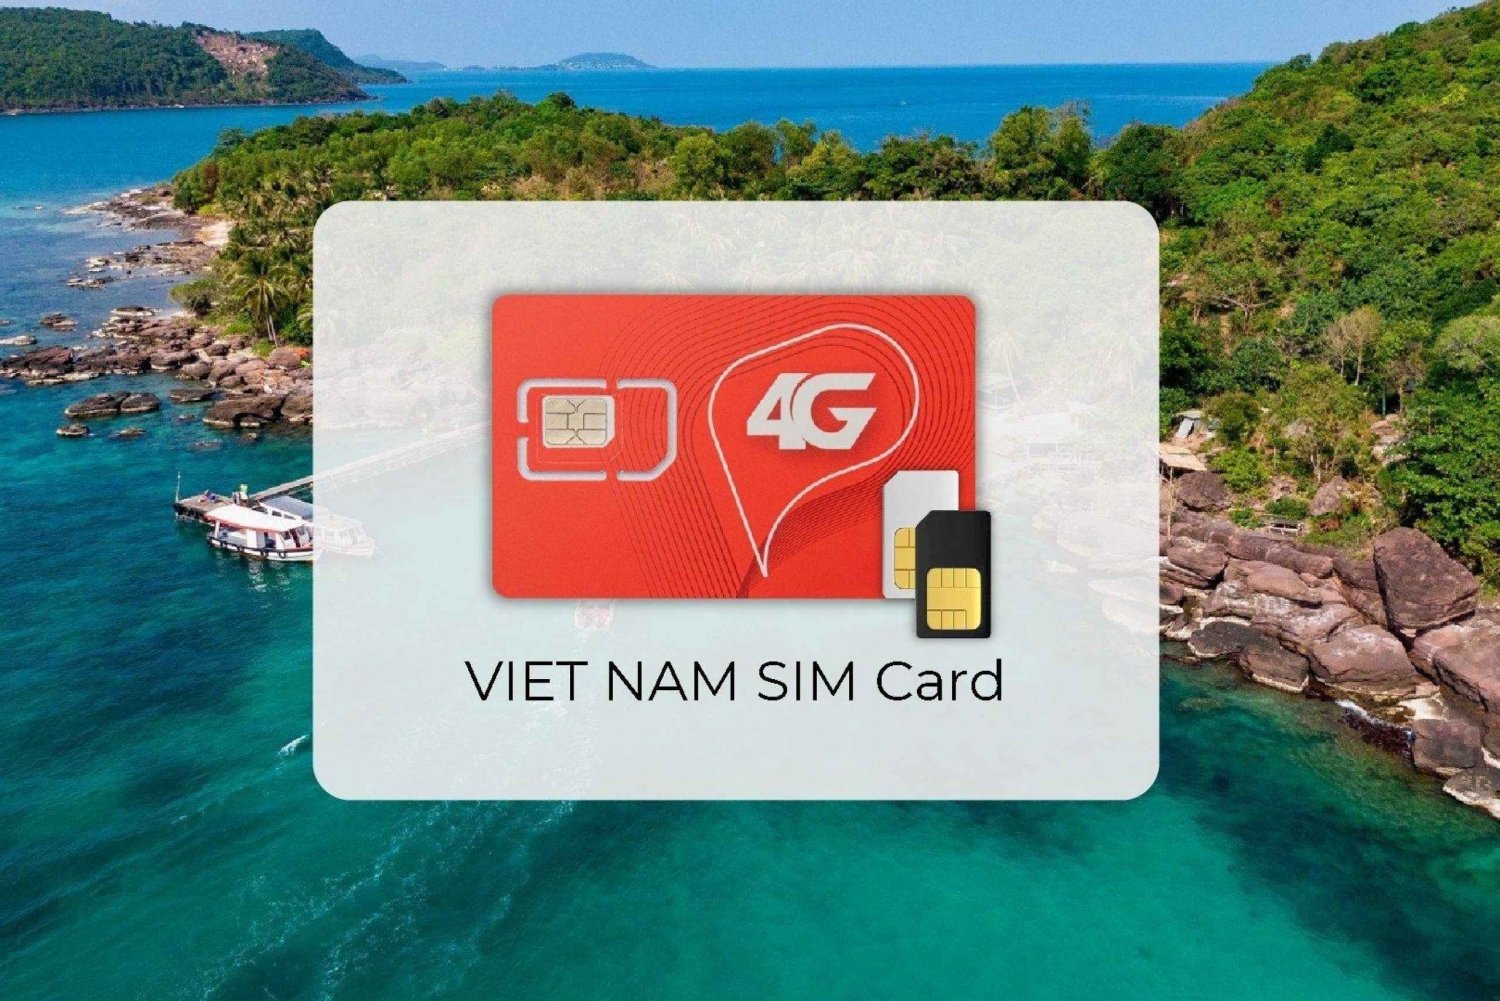 Hanoi: Toeristische SIM-kaart met 4G mobiele data van Viettel